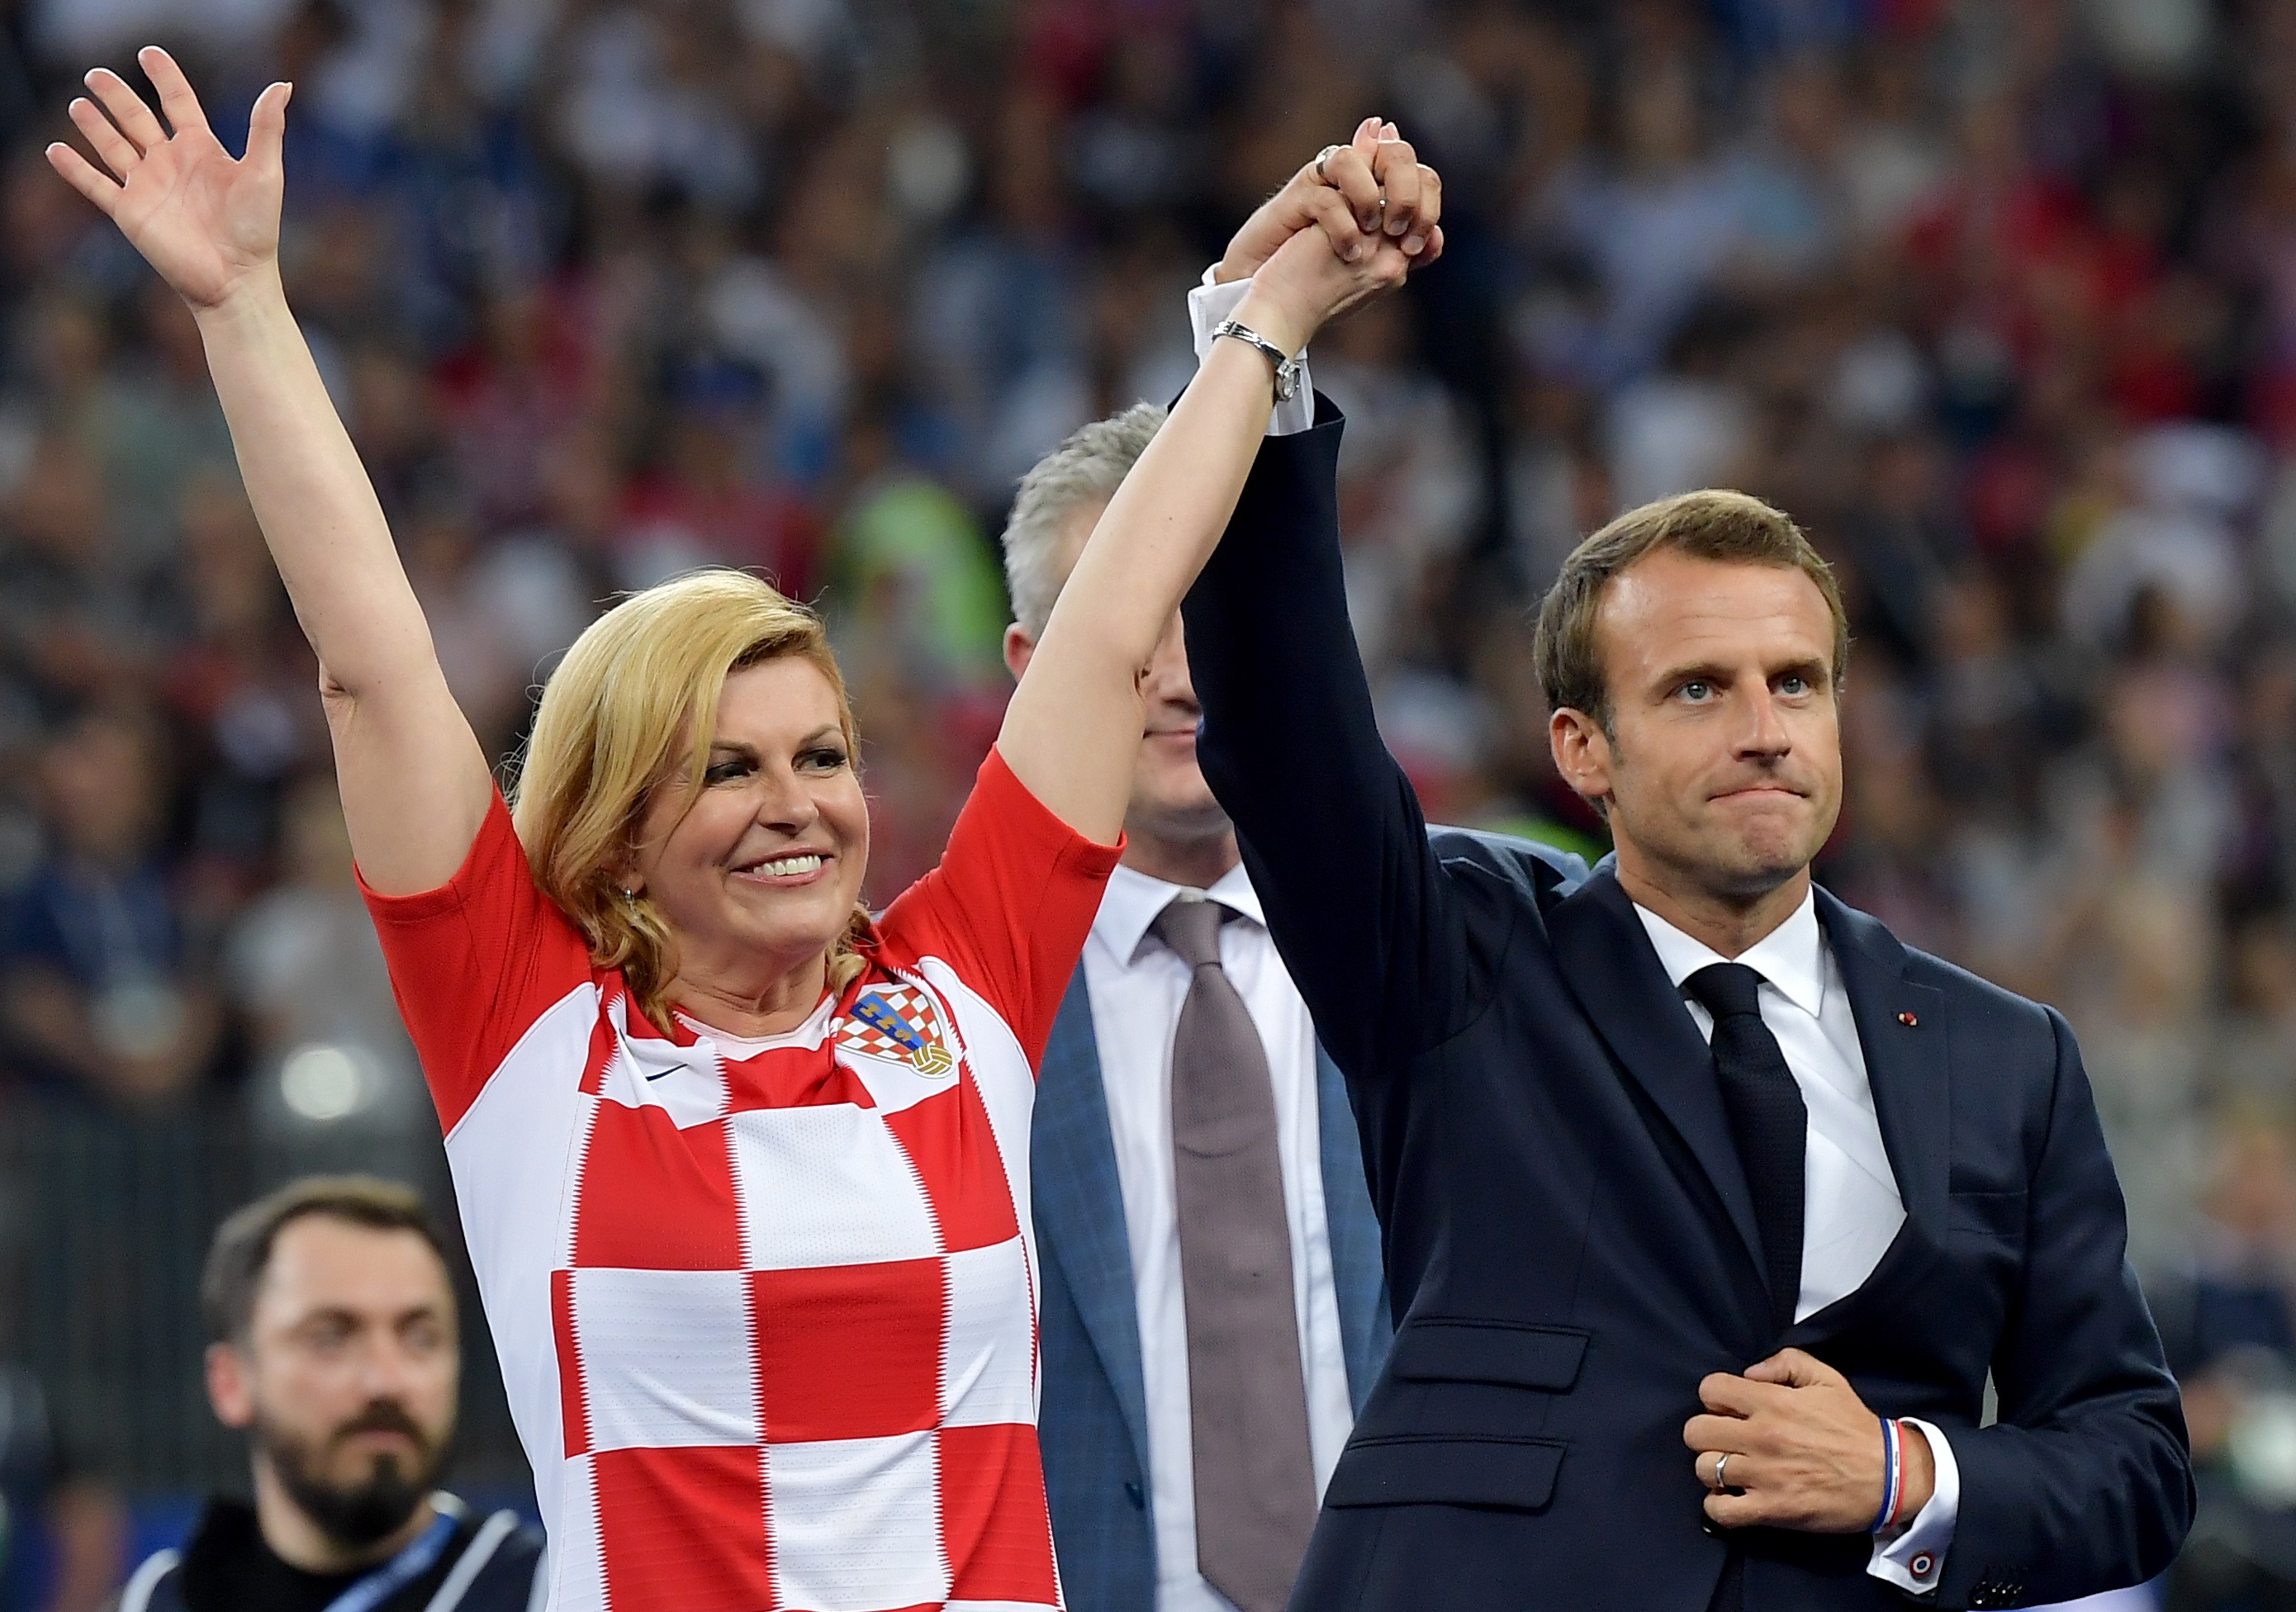 Макрон и хърватската президентка Колинда Грабар-Китарович останаха под дъжда и се измокриха до кости, докато руският президент Владимир Путин бе удобно покрит с чадър. Изданията в Европа пишат, че двамата са спечелили симпатиите по време на тази невероятна сцена. Хърватската президентка е запазила търпението си и усмивката си и е продължила да поздравява и прегръща футболистите въпреки проливния дъжд. Подобна е била и реакцията на Макрон, за когото изданията на шега пишат, че и той като националите е "намокрил фланелката си". Коментатори пък критикуват Путин за проява на неелегатност точно в този момент и смятат, че той е трябвало бързо да отиде с чадъра до хърватската си колежка и да я предпази от дъжда.